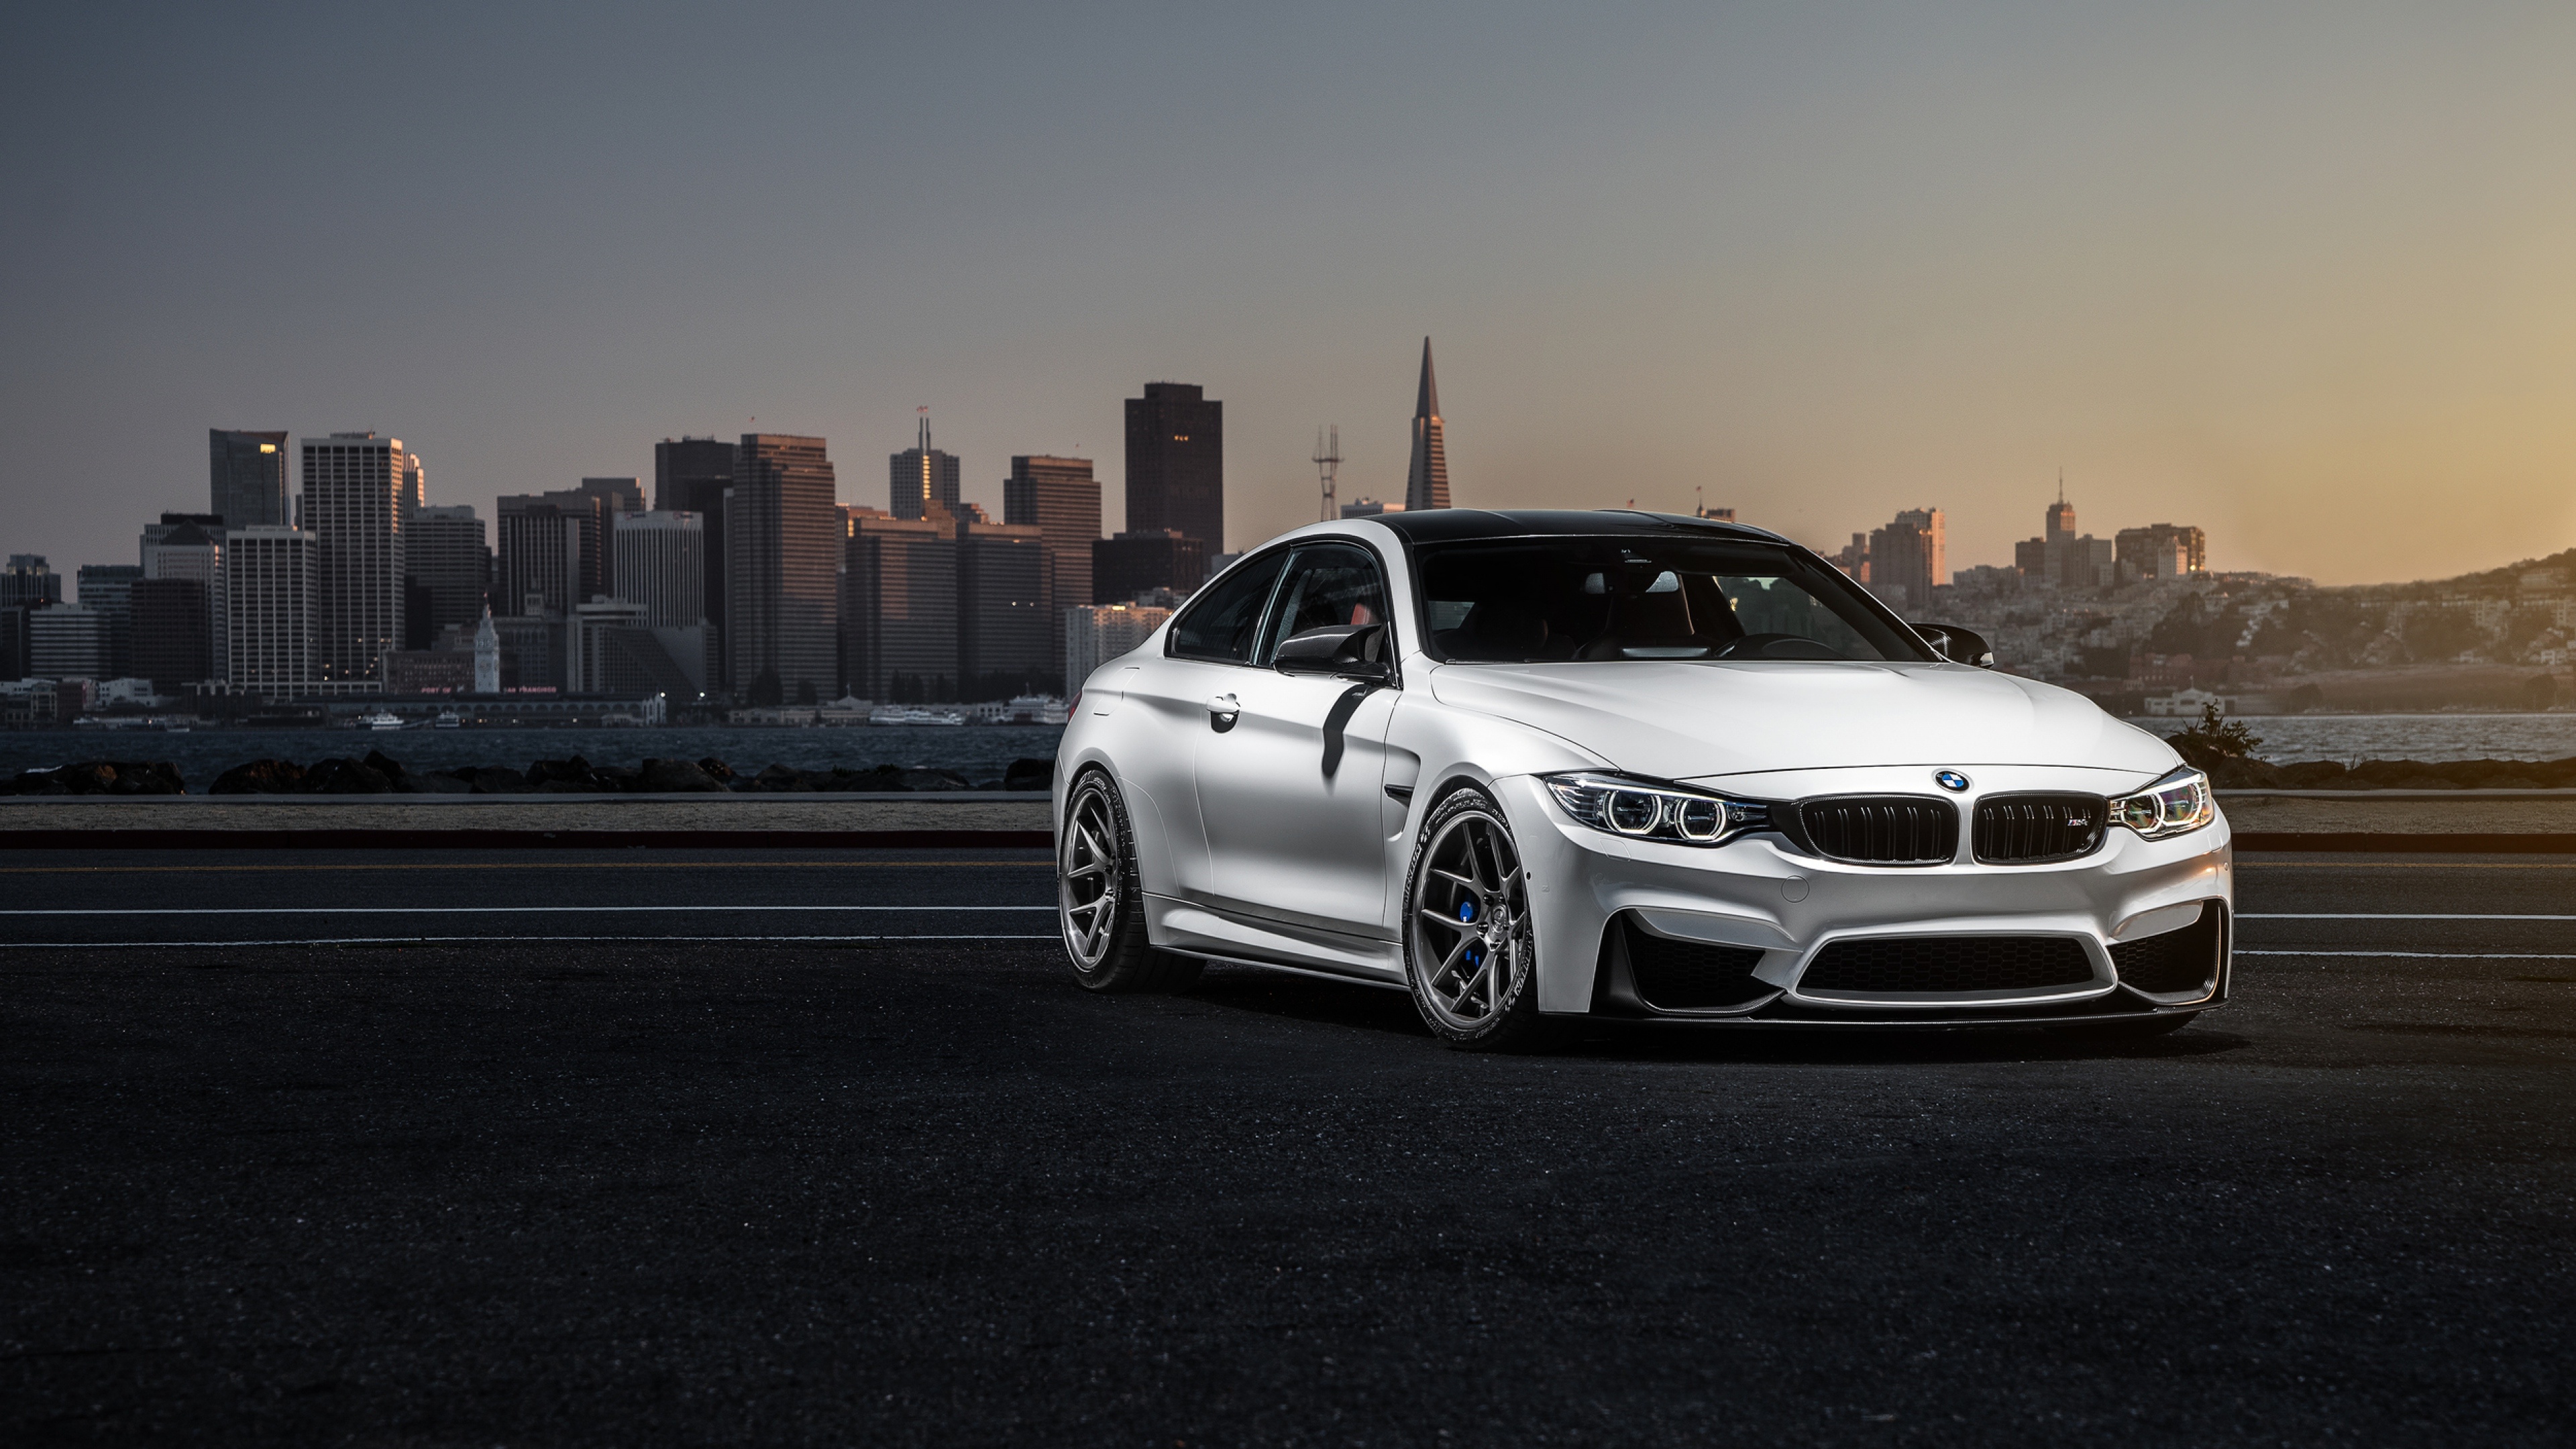 BMW M4, HD cars, 4K wallpapers, Exquisite visuals, 3840x2160 4K Desktop